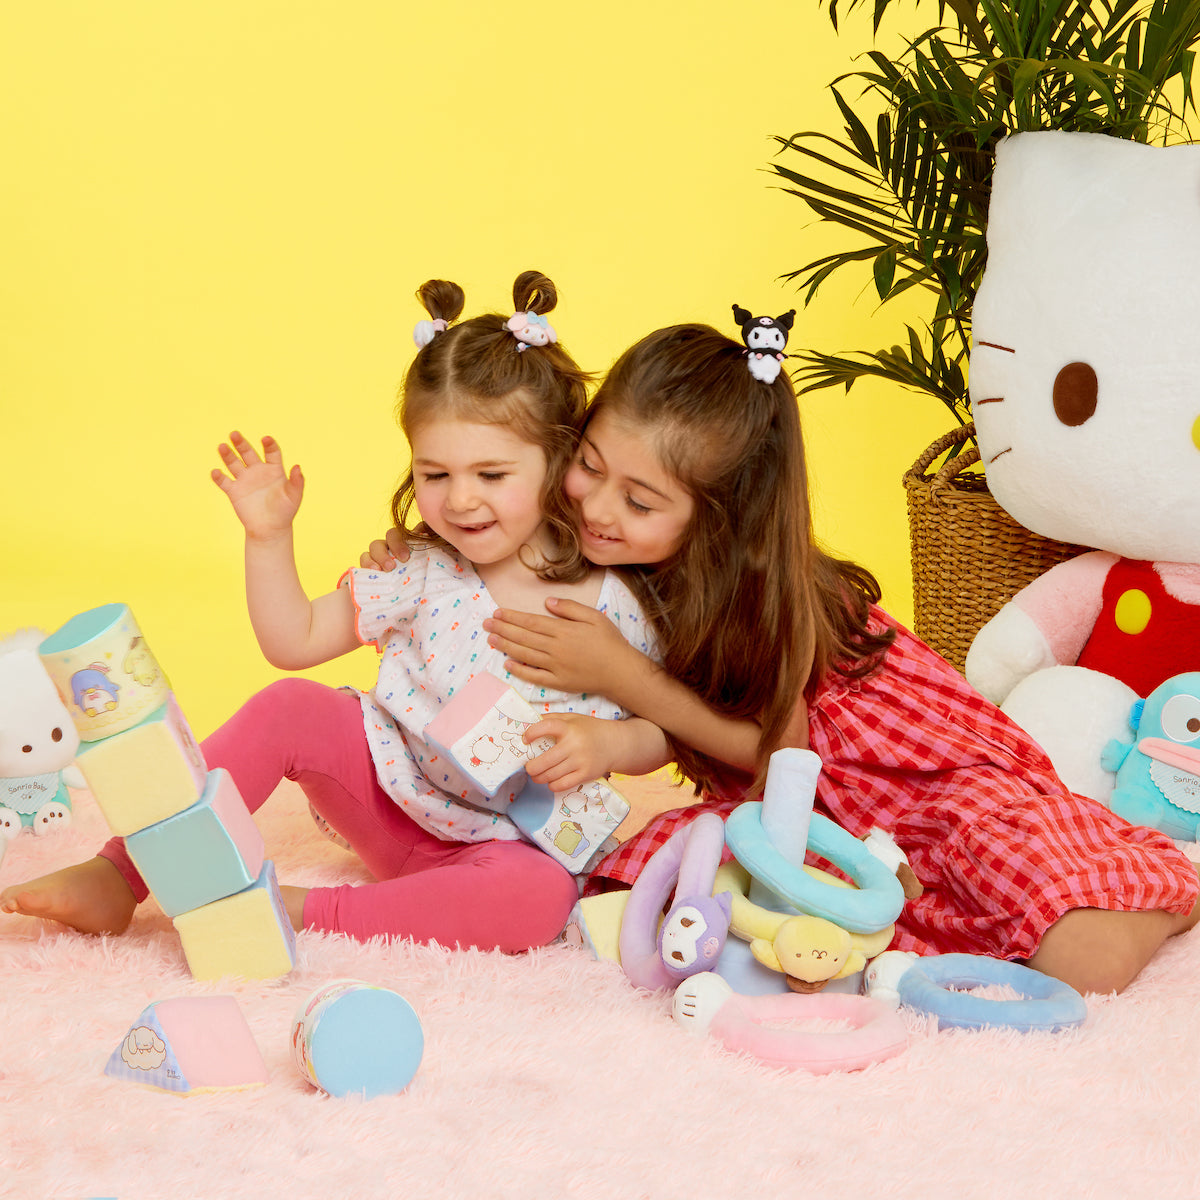 Japan Sanrio Baby Plush Toy Set - Hello Kitty